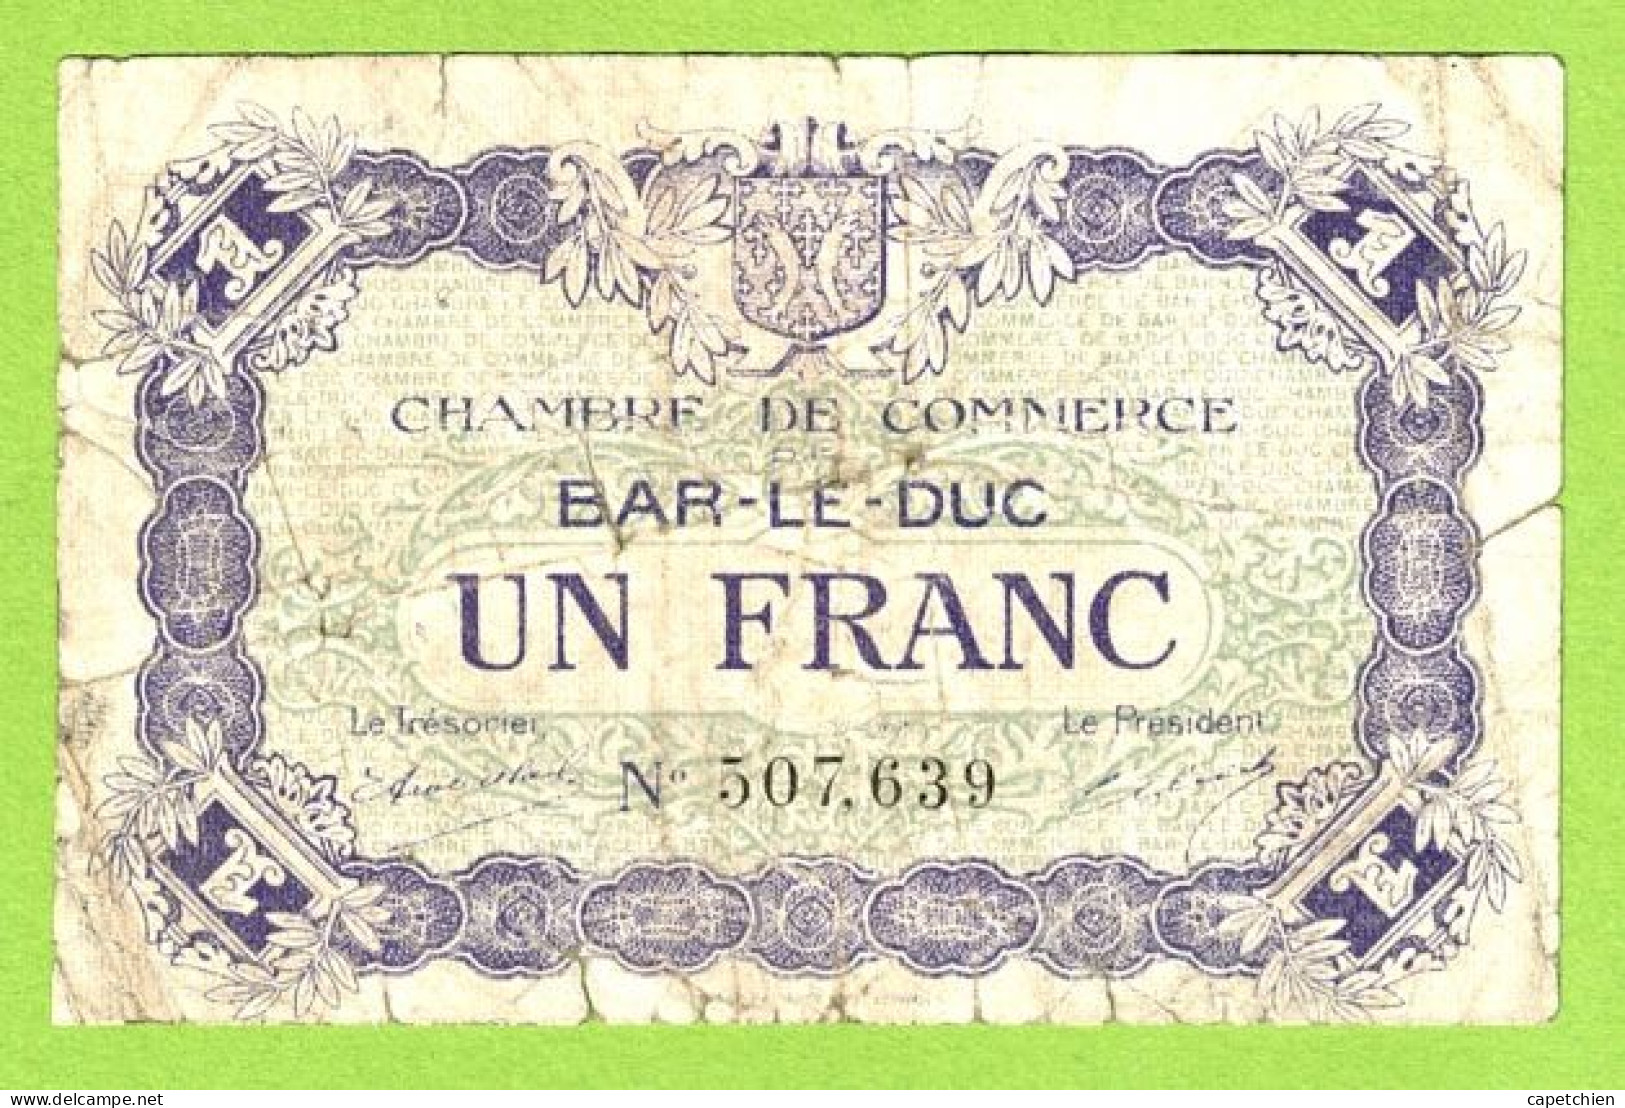 FRANCE / CHAMBRE DE COMMERCE / BAR LE DUC / 1 FRANC /  1 Er SEPTEMBRE 1917  / 3ème EMISSION / N° 507639 - Handelskammer